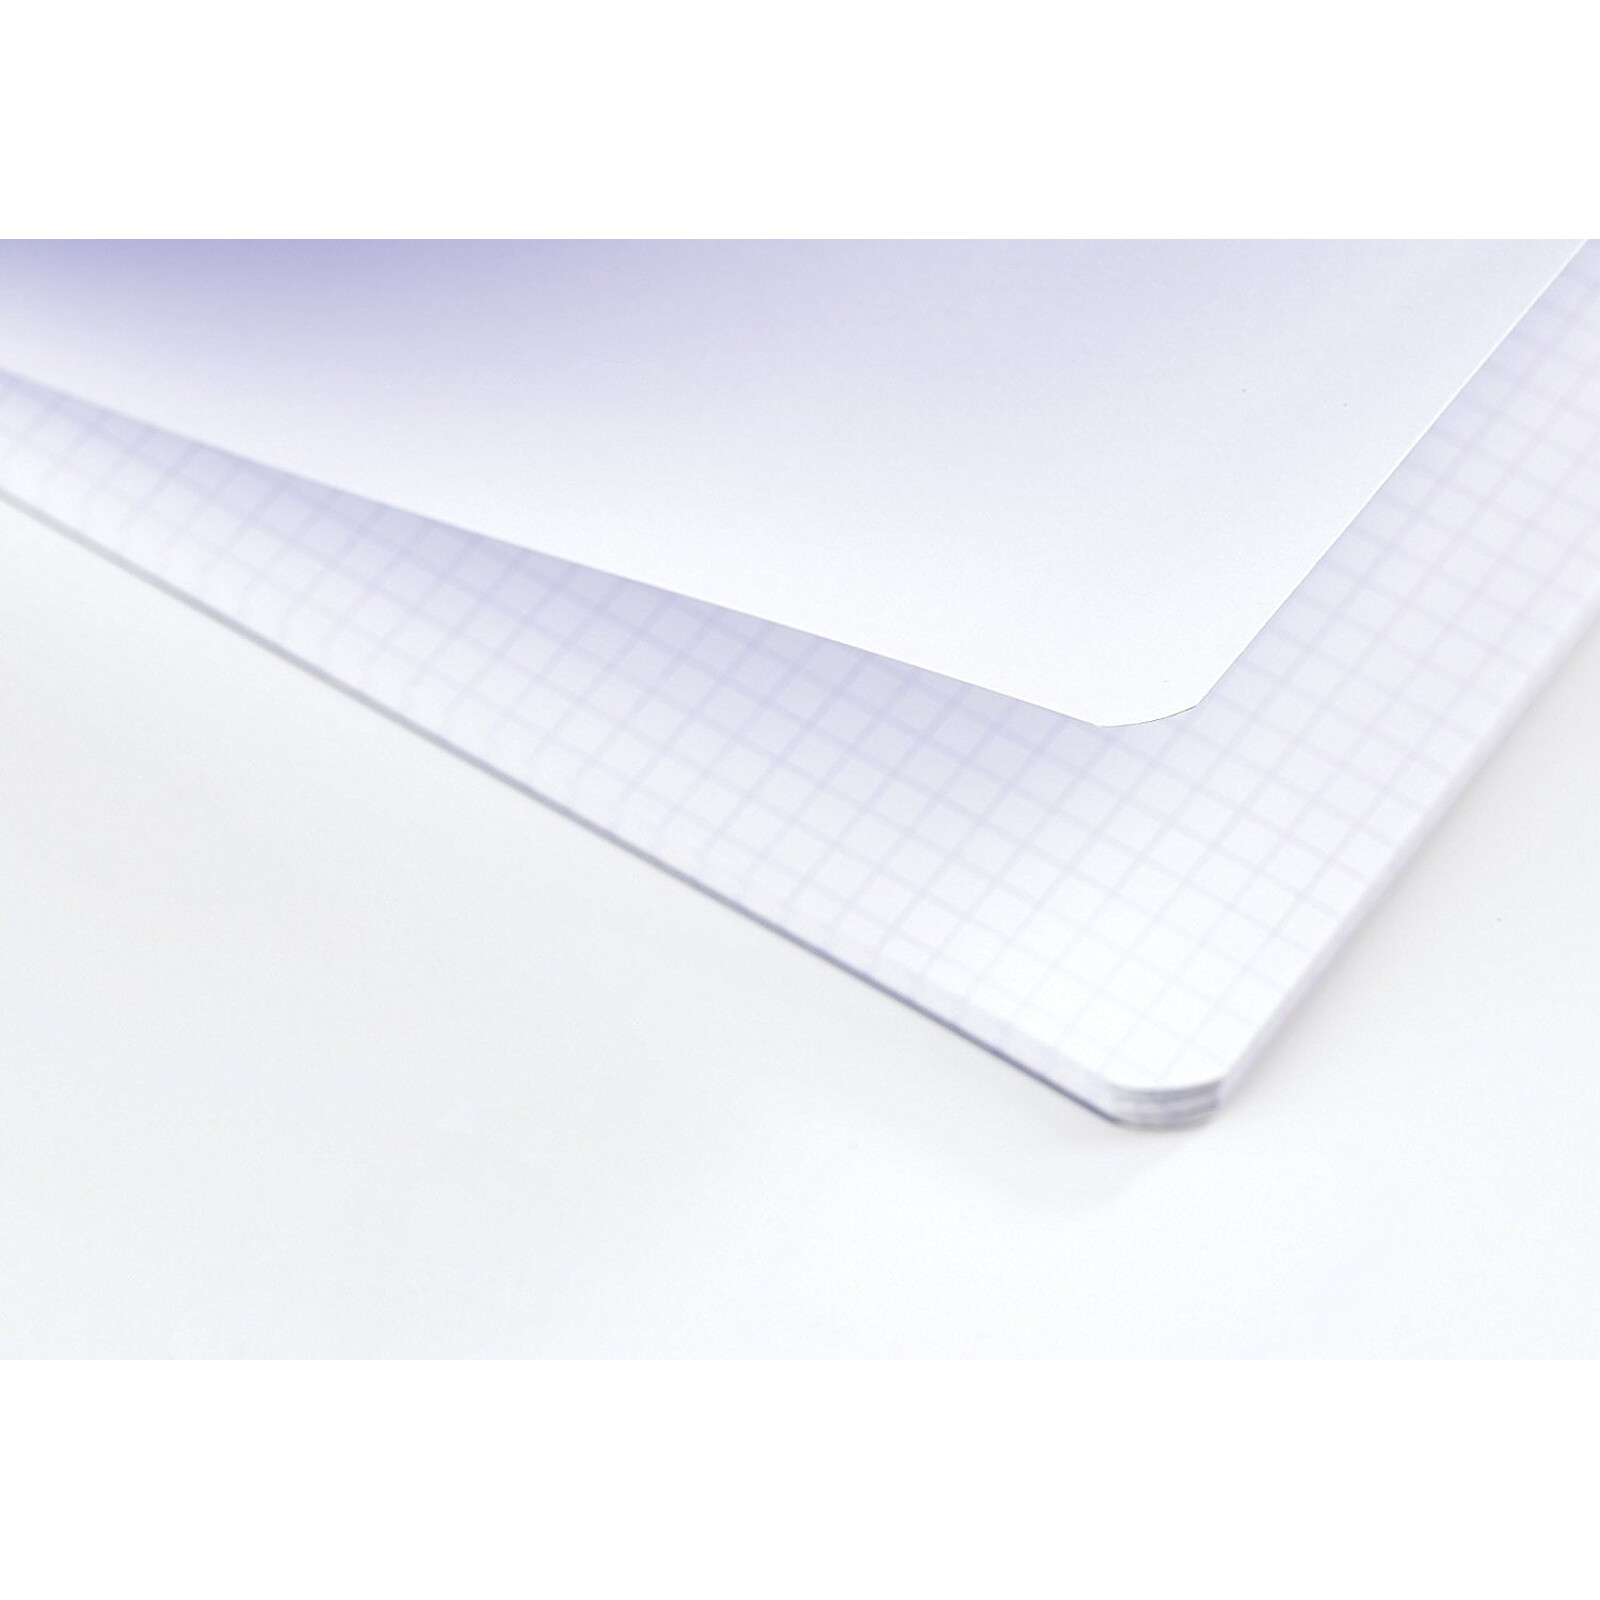 Carnet à reliure intégrale 100 pages, format 11x17 cm, quadrillé 5x5,  papier 70 g